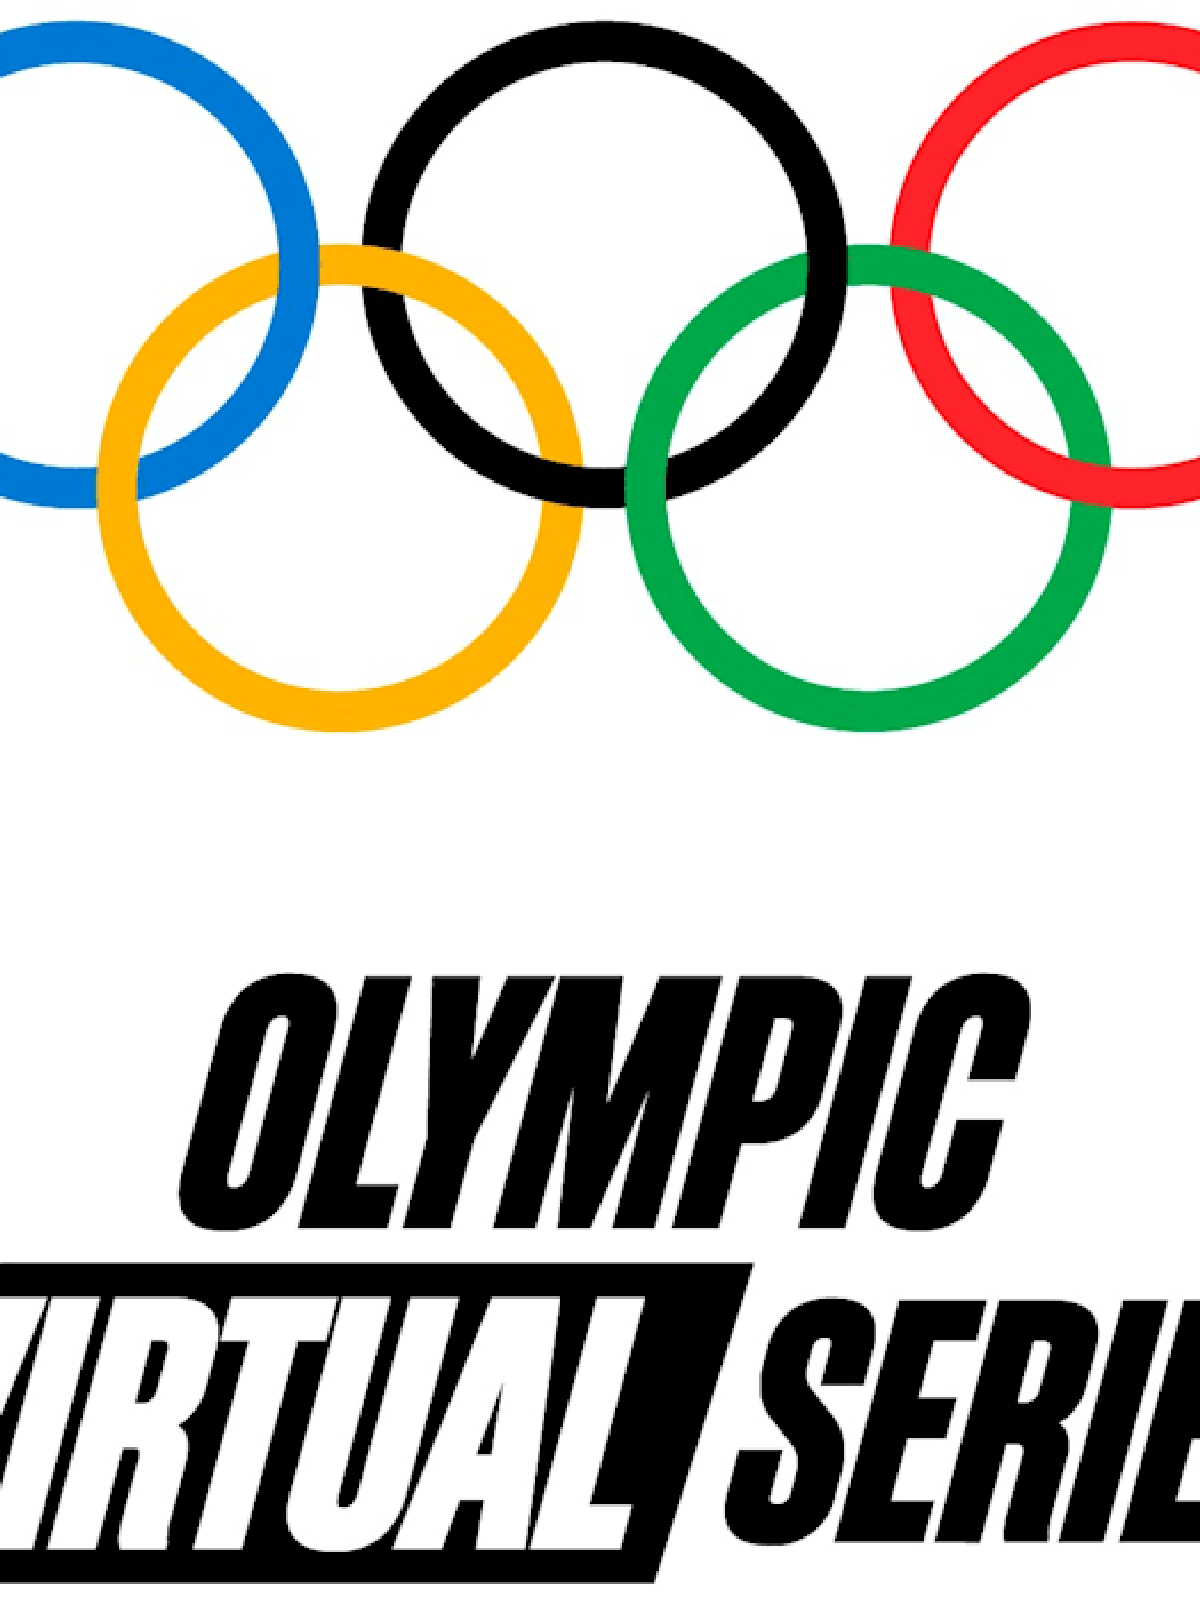 Olimpíadas Rio 2016 terão jogos inaugurais de eSports